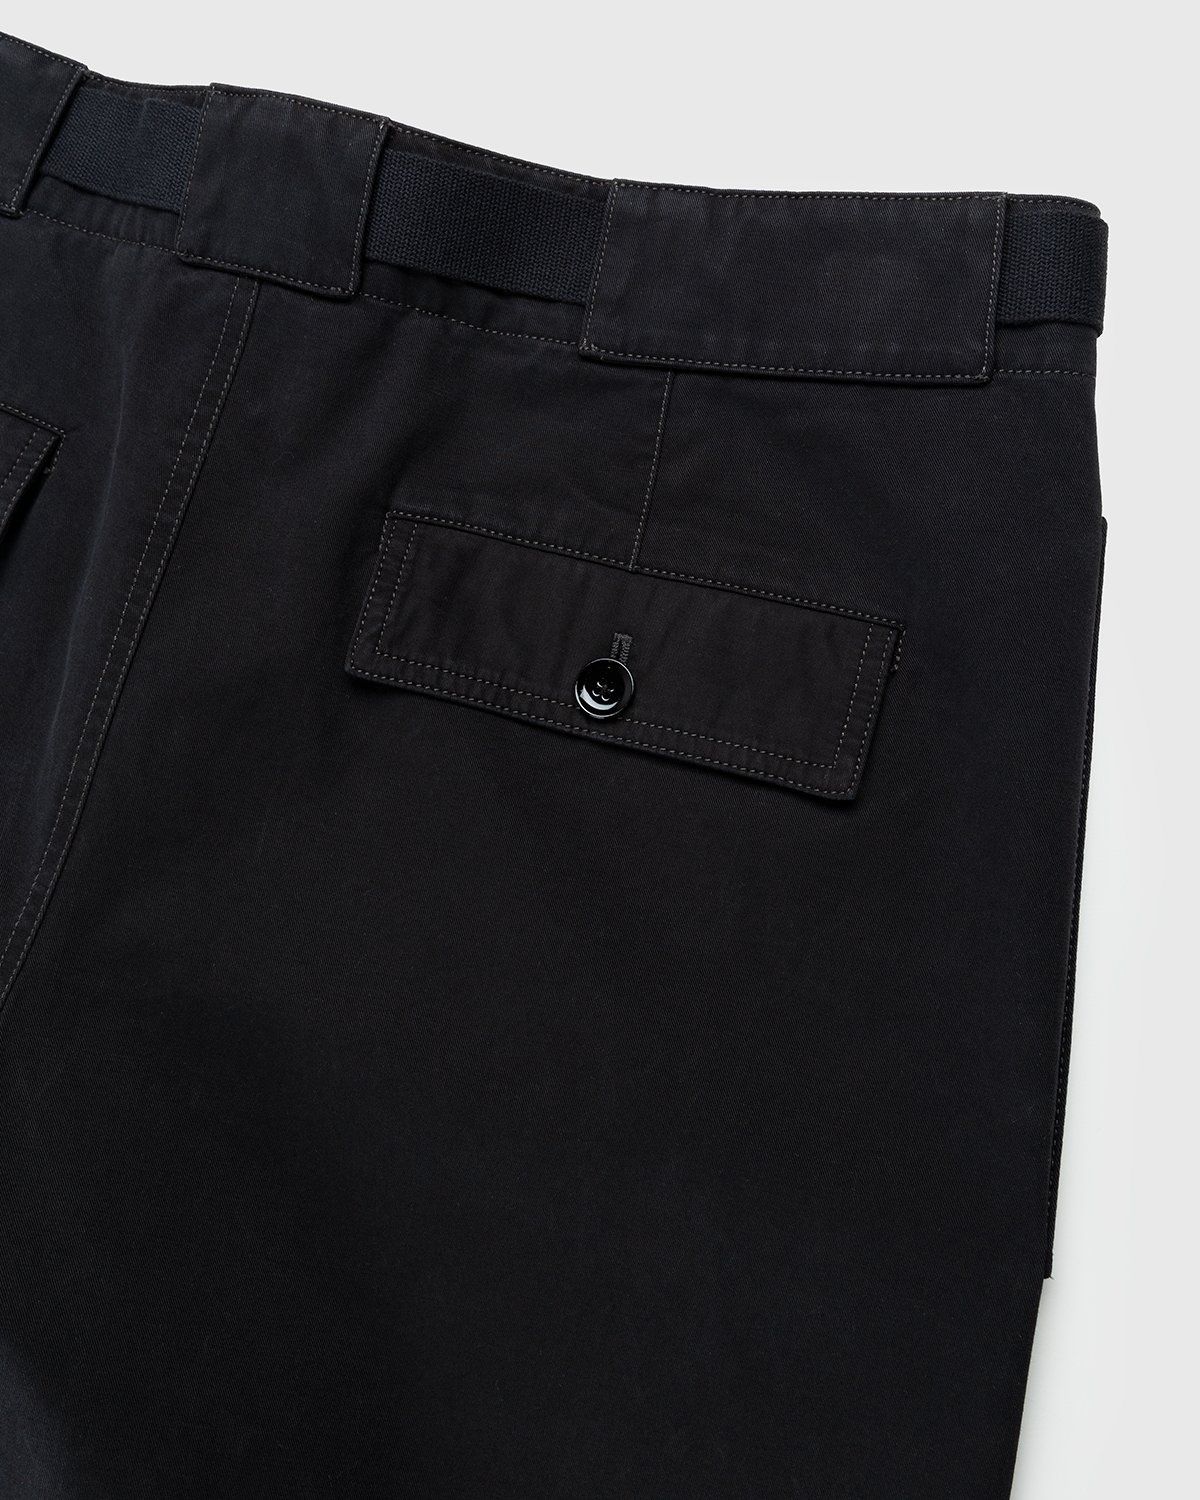 Lemaire – Utility Pants Black - Image 3